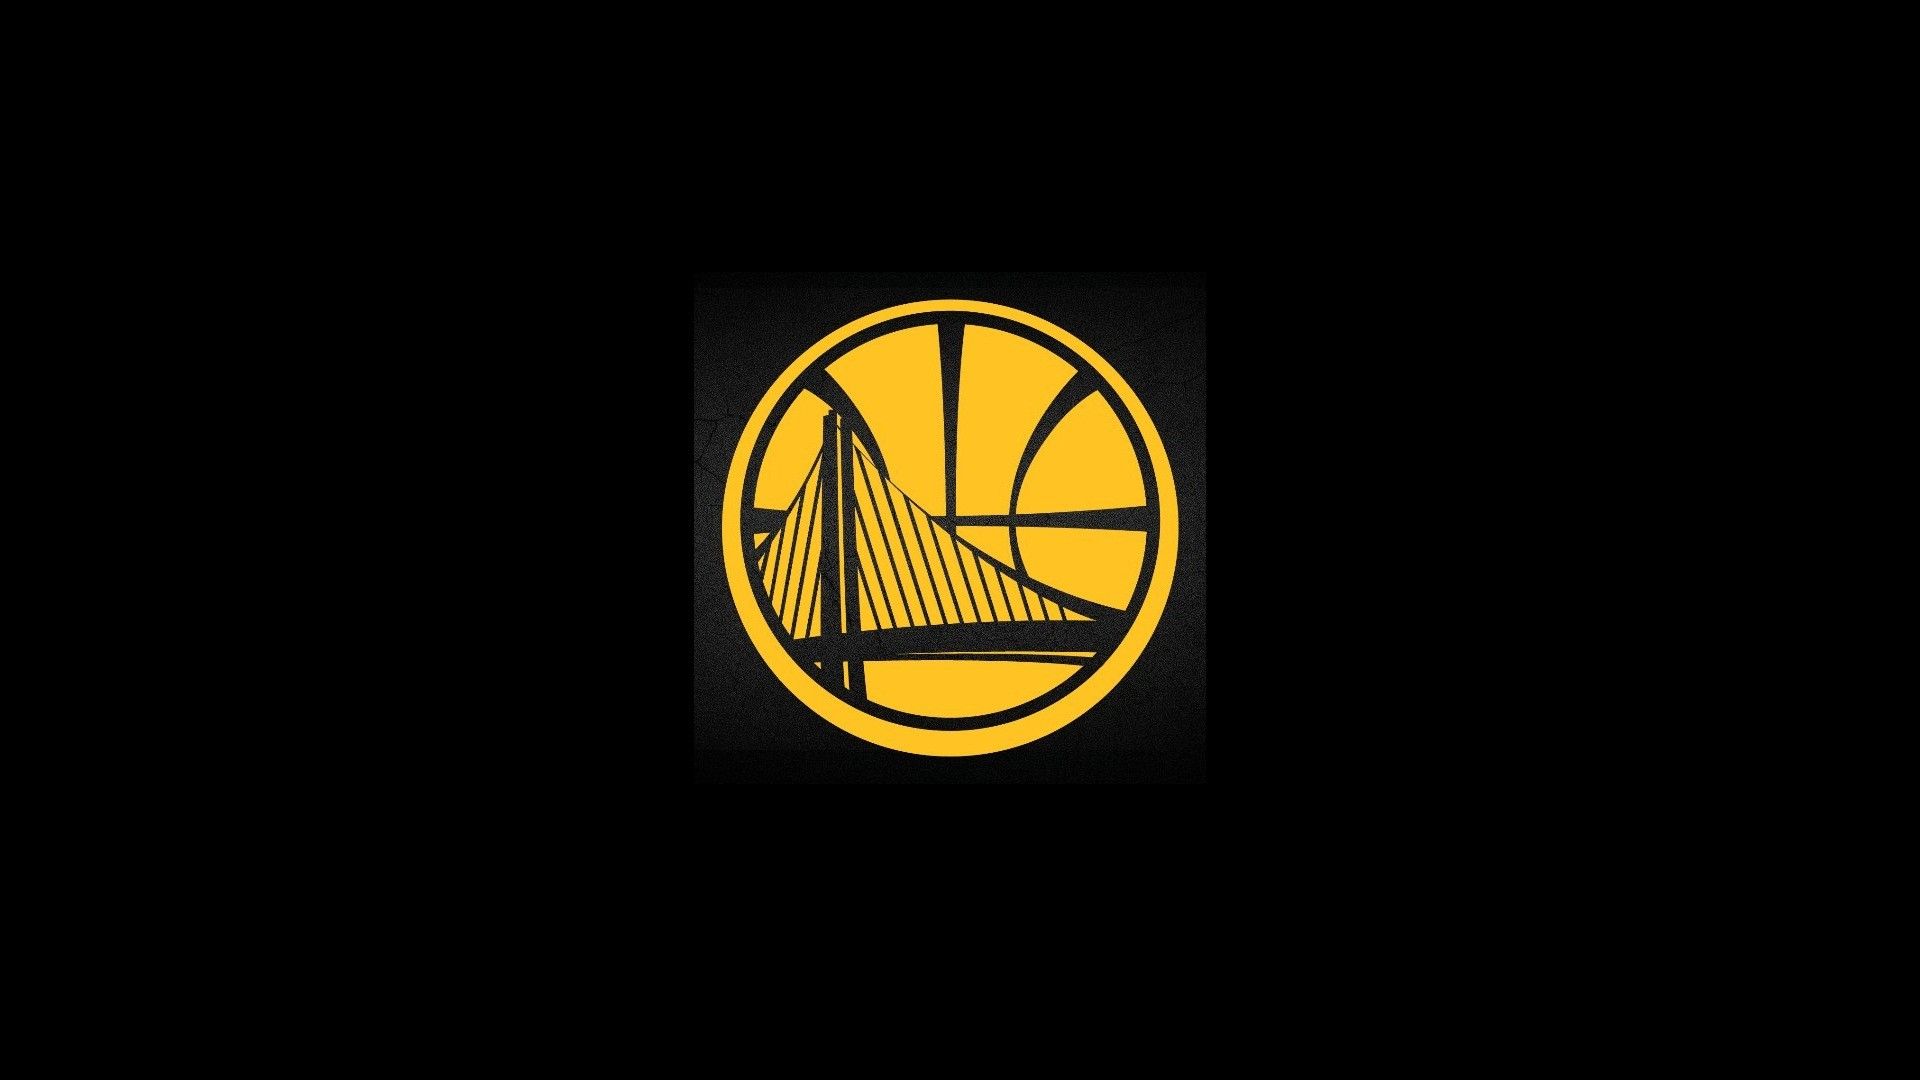 HD Golden State Warriors Background Basketball Wallpaper